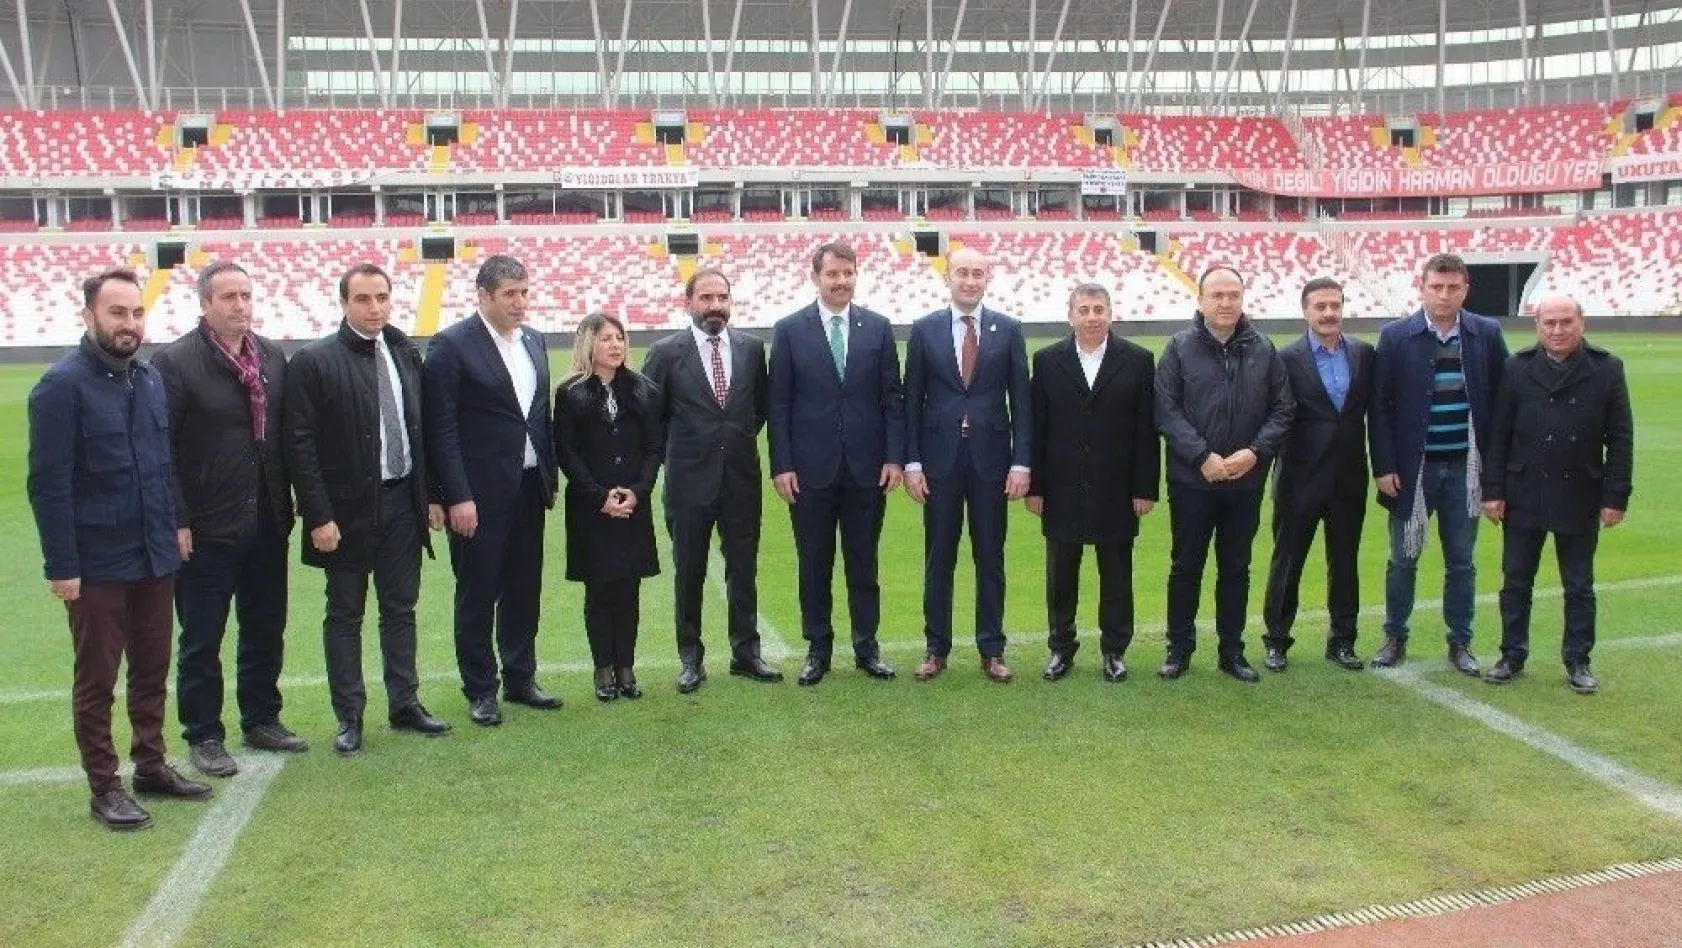 Bahçeşehir Koleji, Sivasspor'un stadına adını verdi
